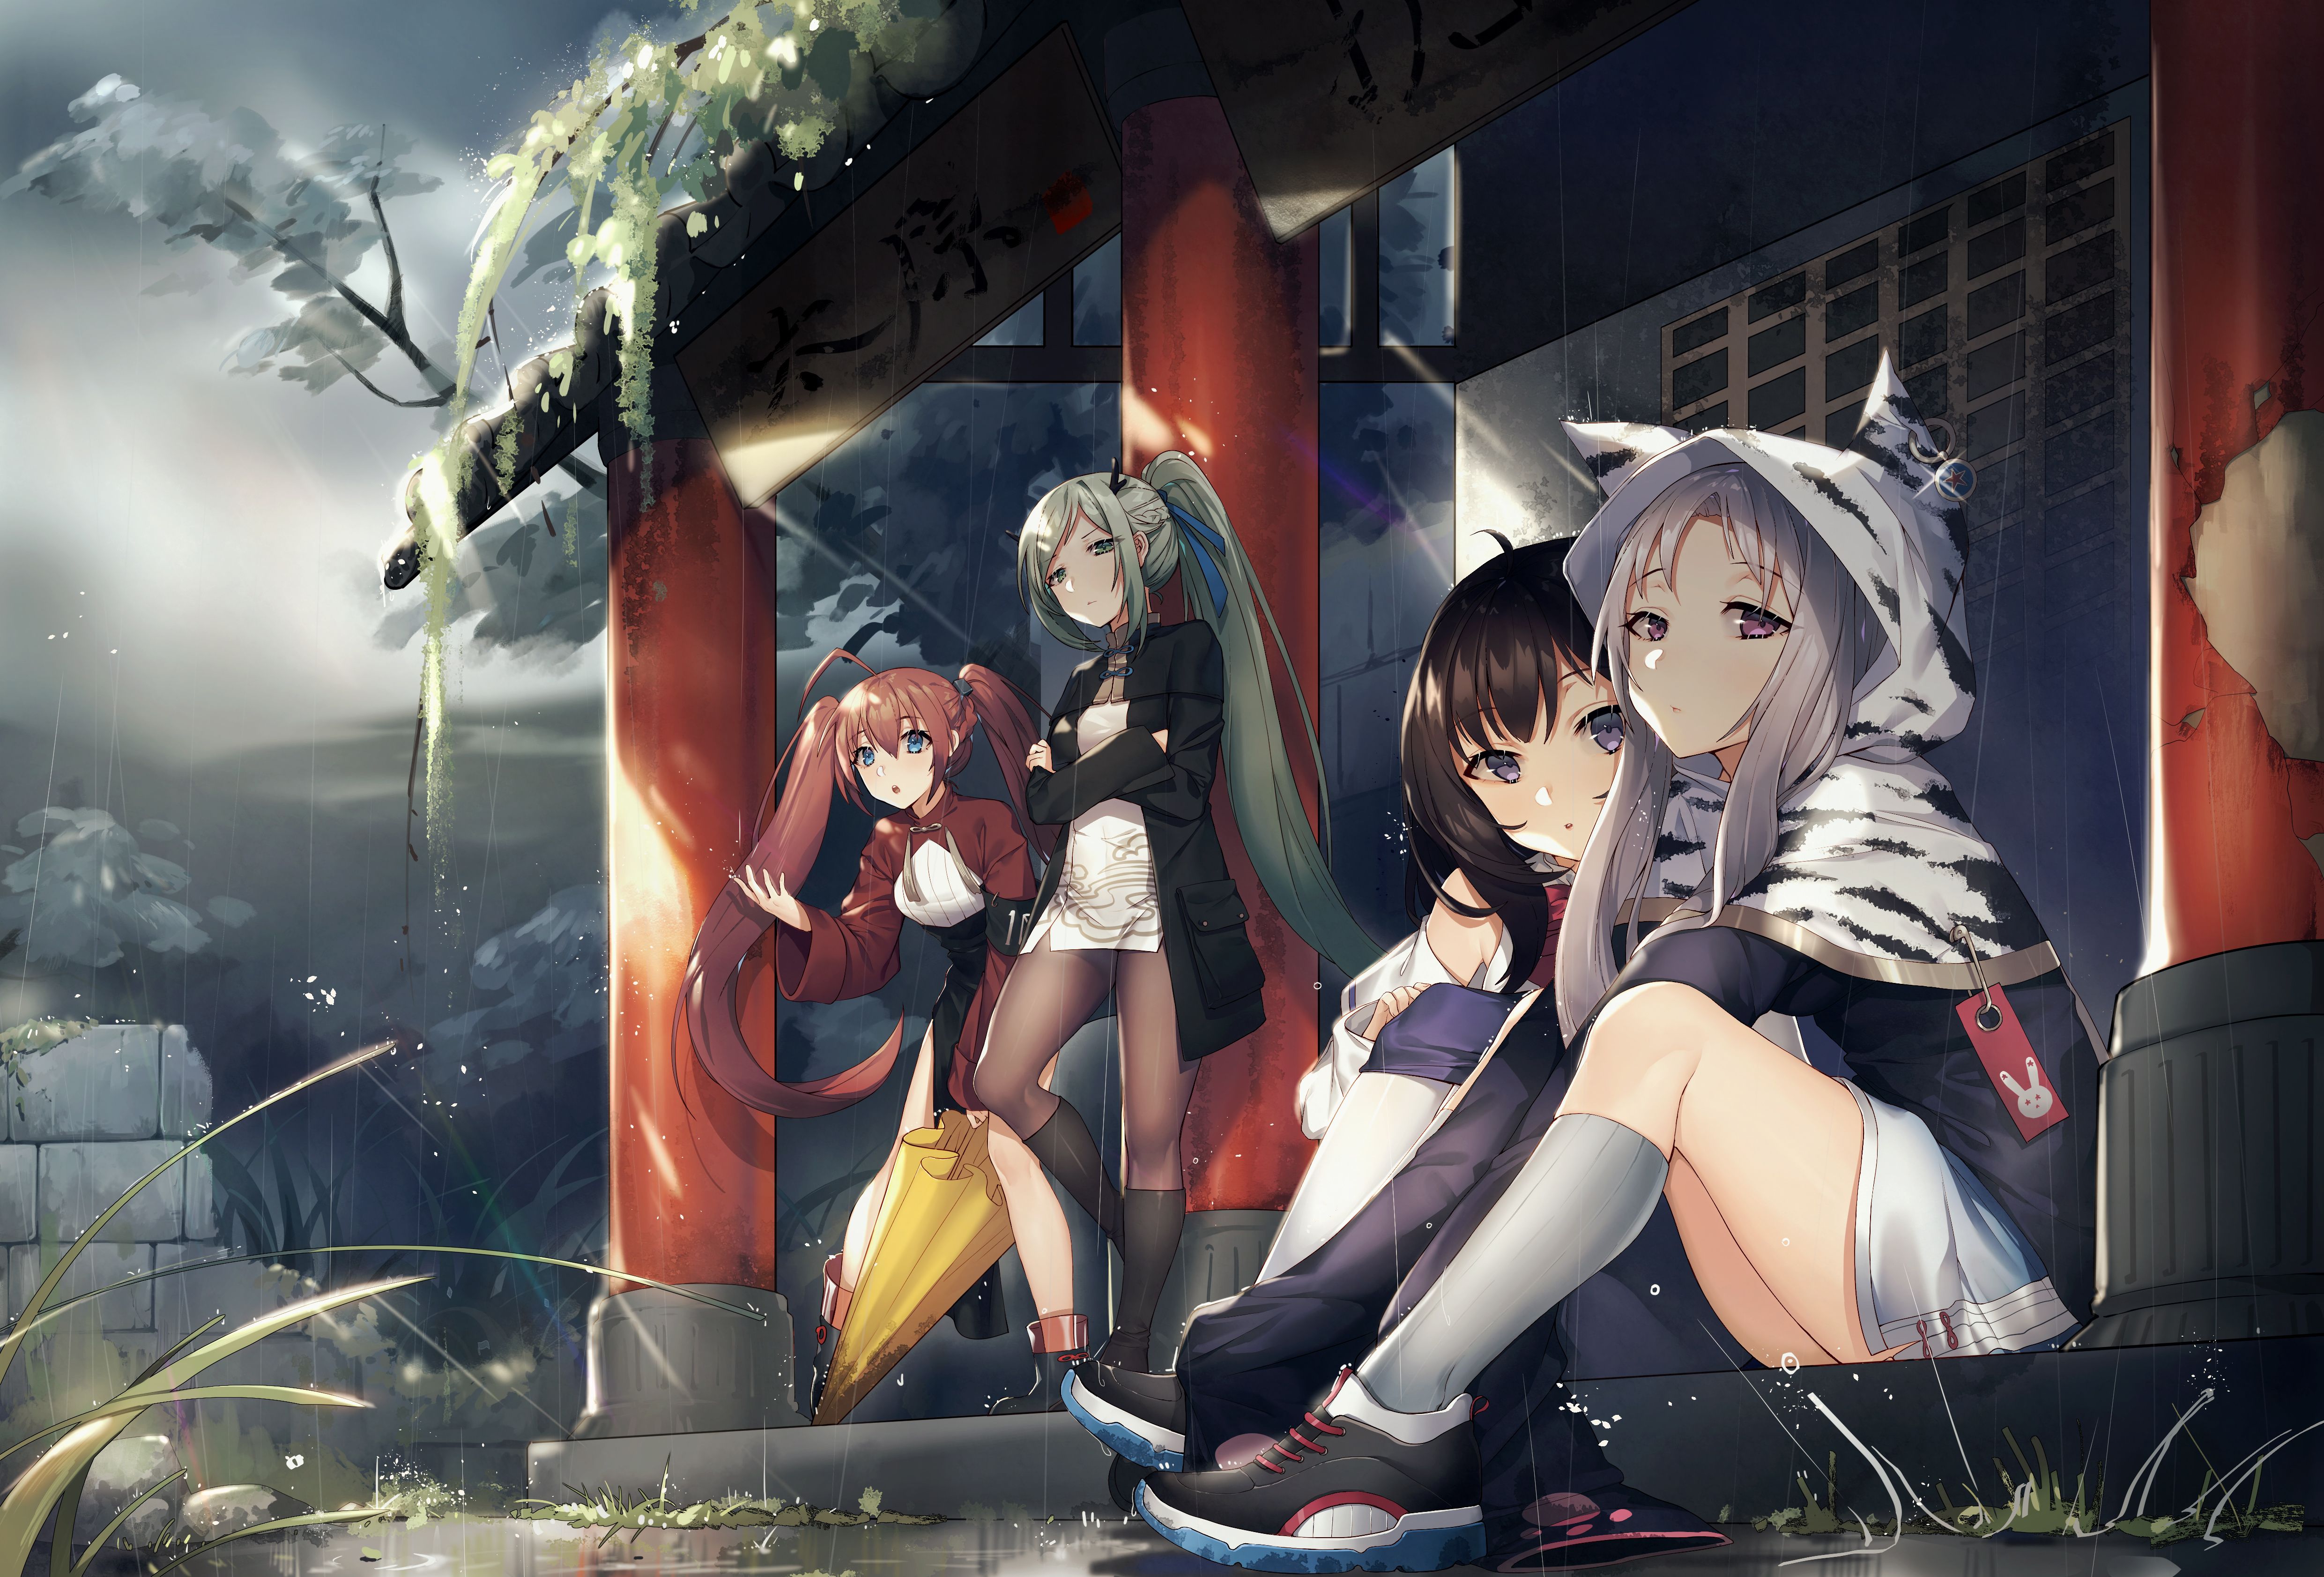 Bored Anime Girls 4k, HD Anime, 4k Wallpaper, Image, Background